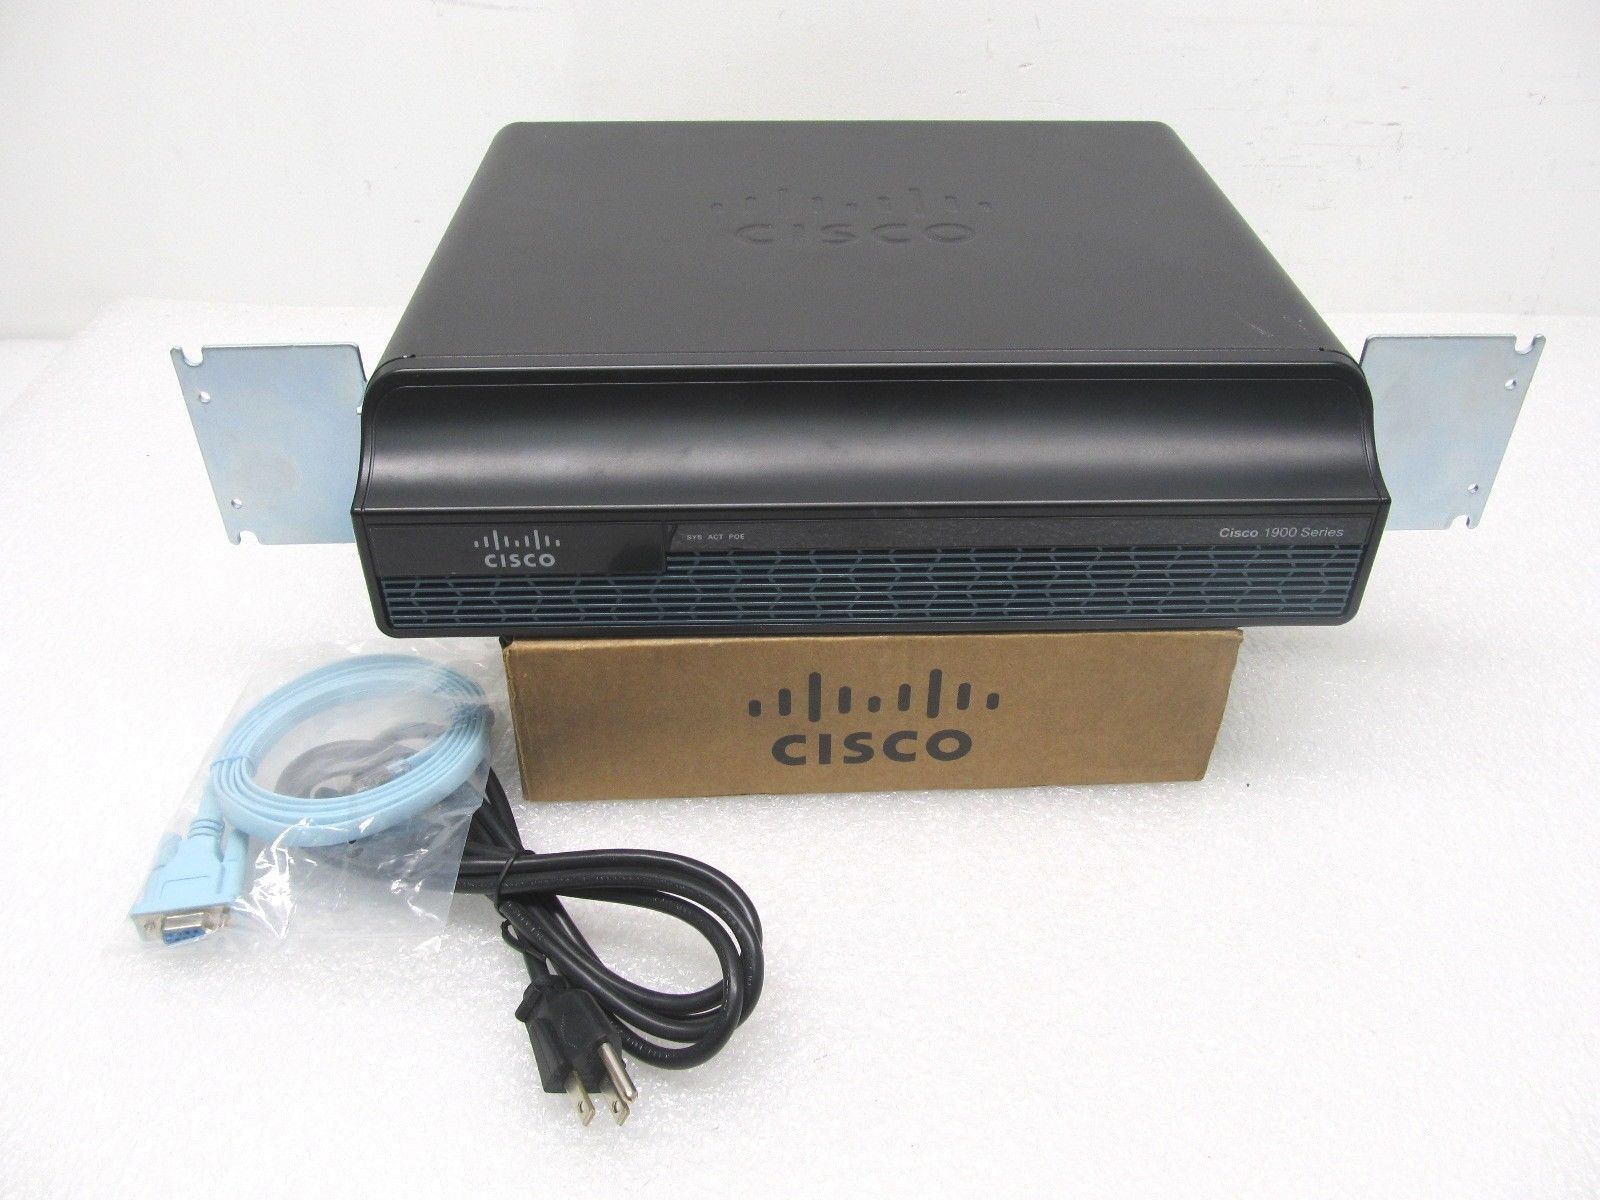 Cisco 1941-SEC/K9 2-Port Gigabit Security Router 1941-SEC CISCO1941-SEC ios-15.7